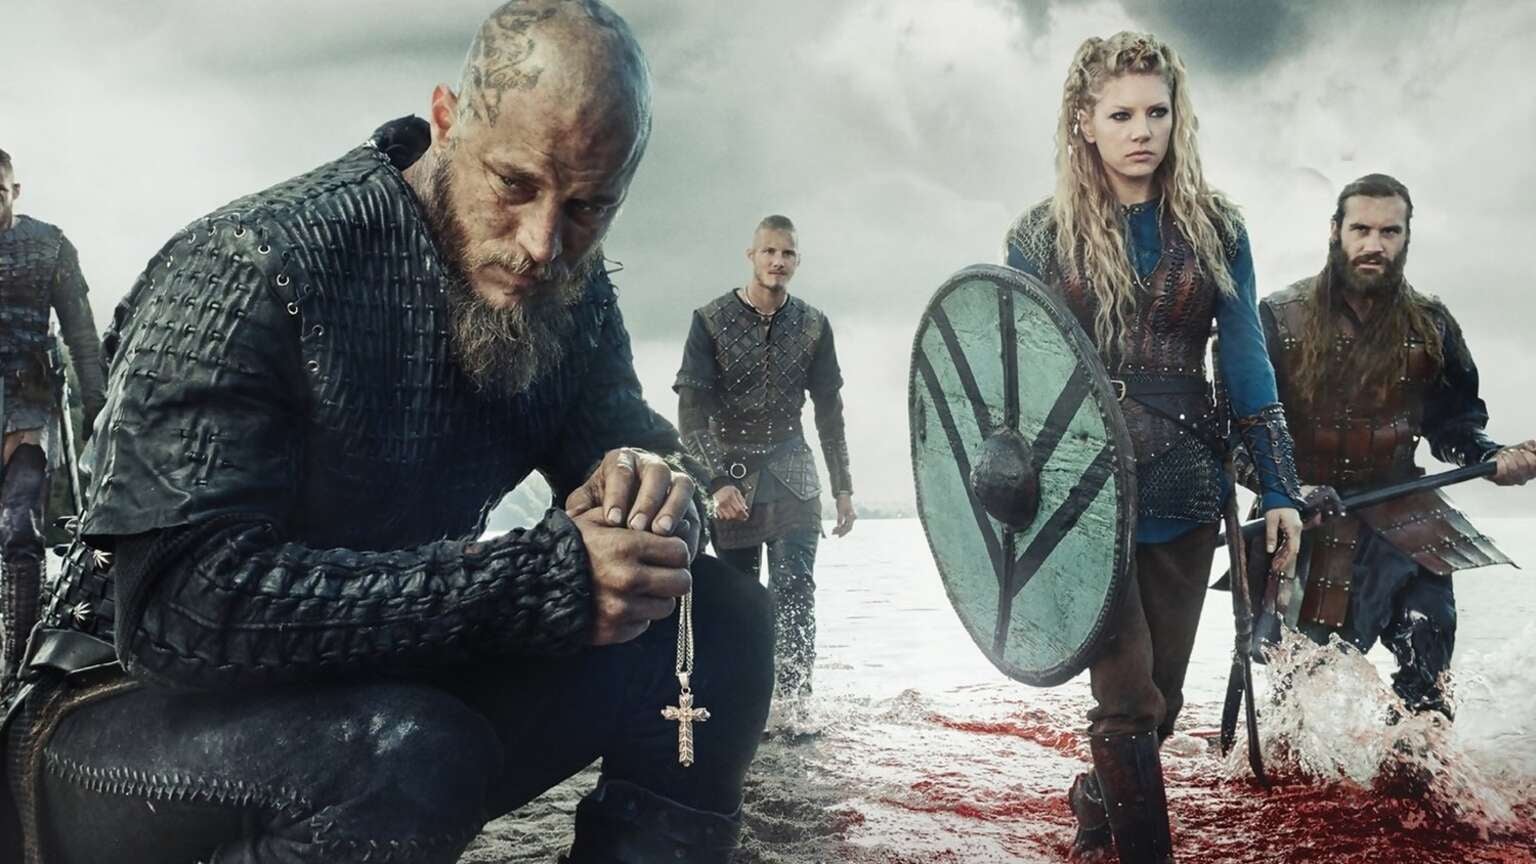 ‘Vikings’ Final Episodes Now On Amazon Prime Video, Starz Sets 'Power